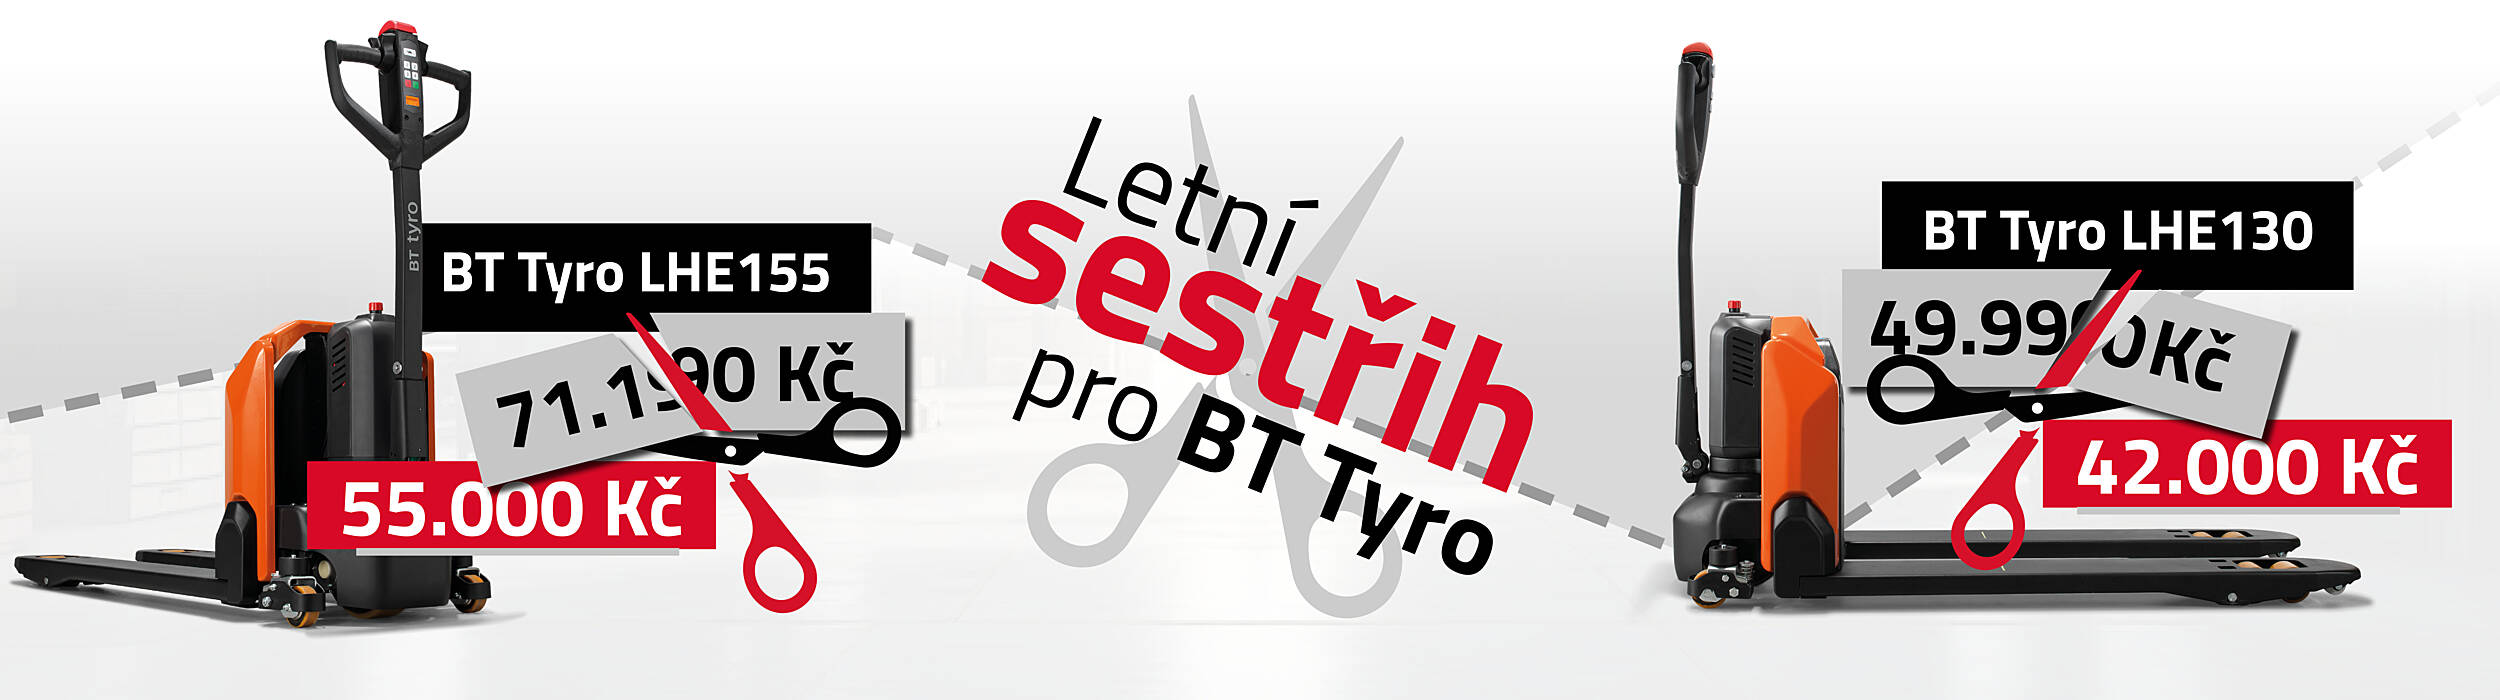 Banner akce Letní sestřih pro BT Tyro, modely LHE130 a LHE155 za rekordně nízké ceny.